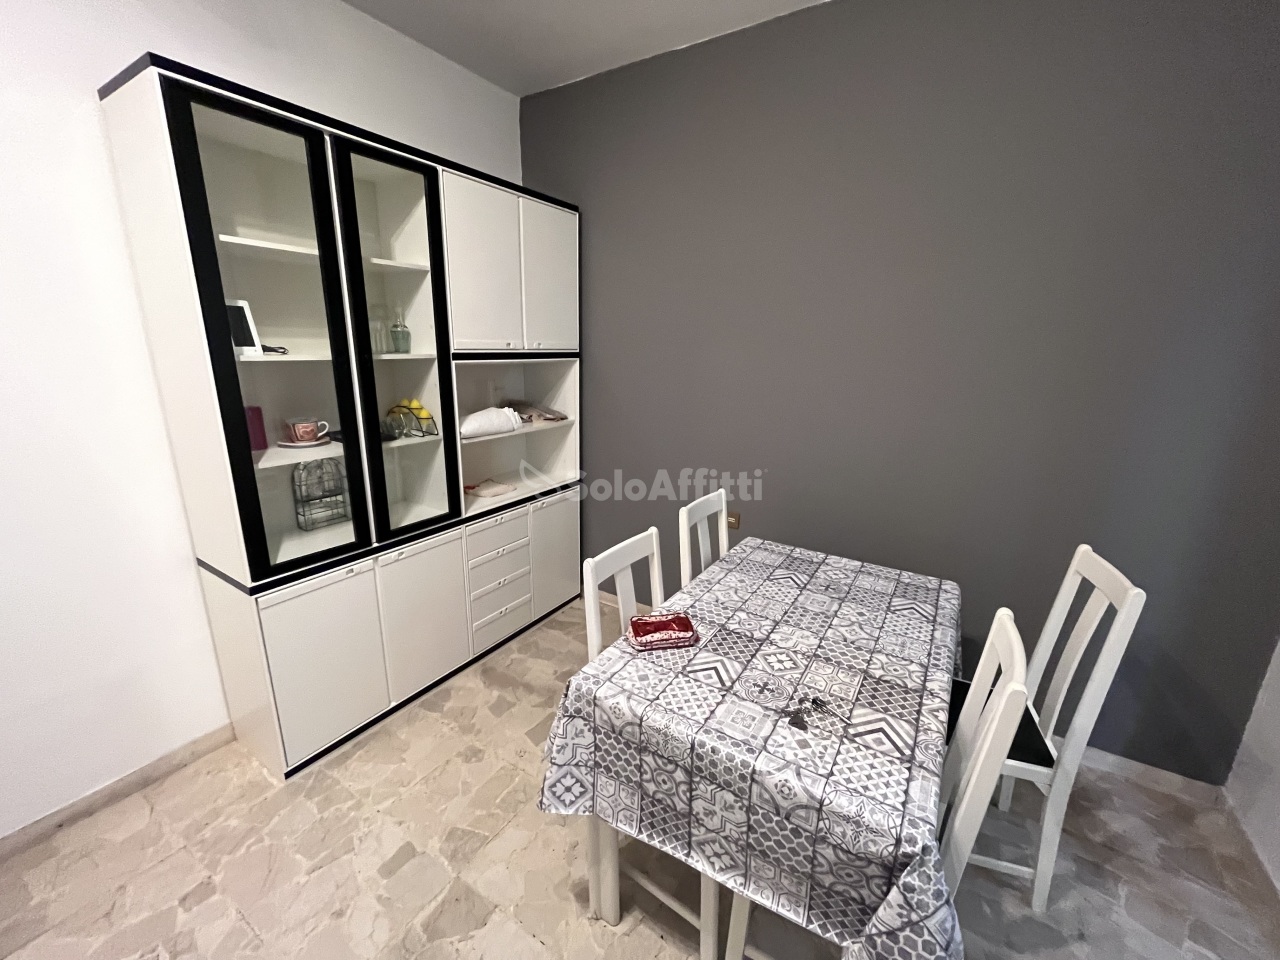 Appartamento in affitto a Bolzano, 2 locali, prezzo € 750 | PortaleAgenzieImmobiliari.it